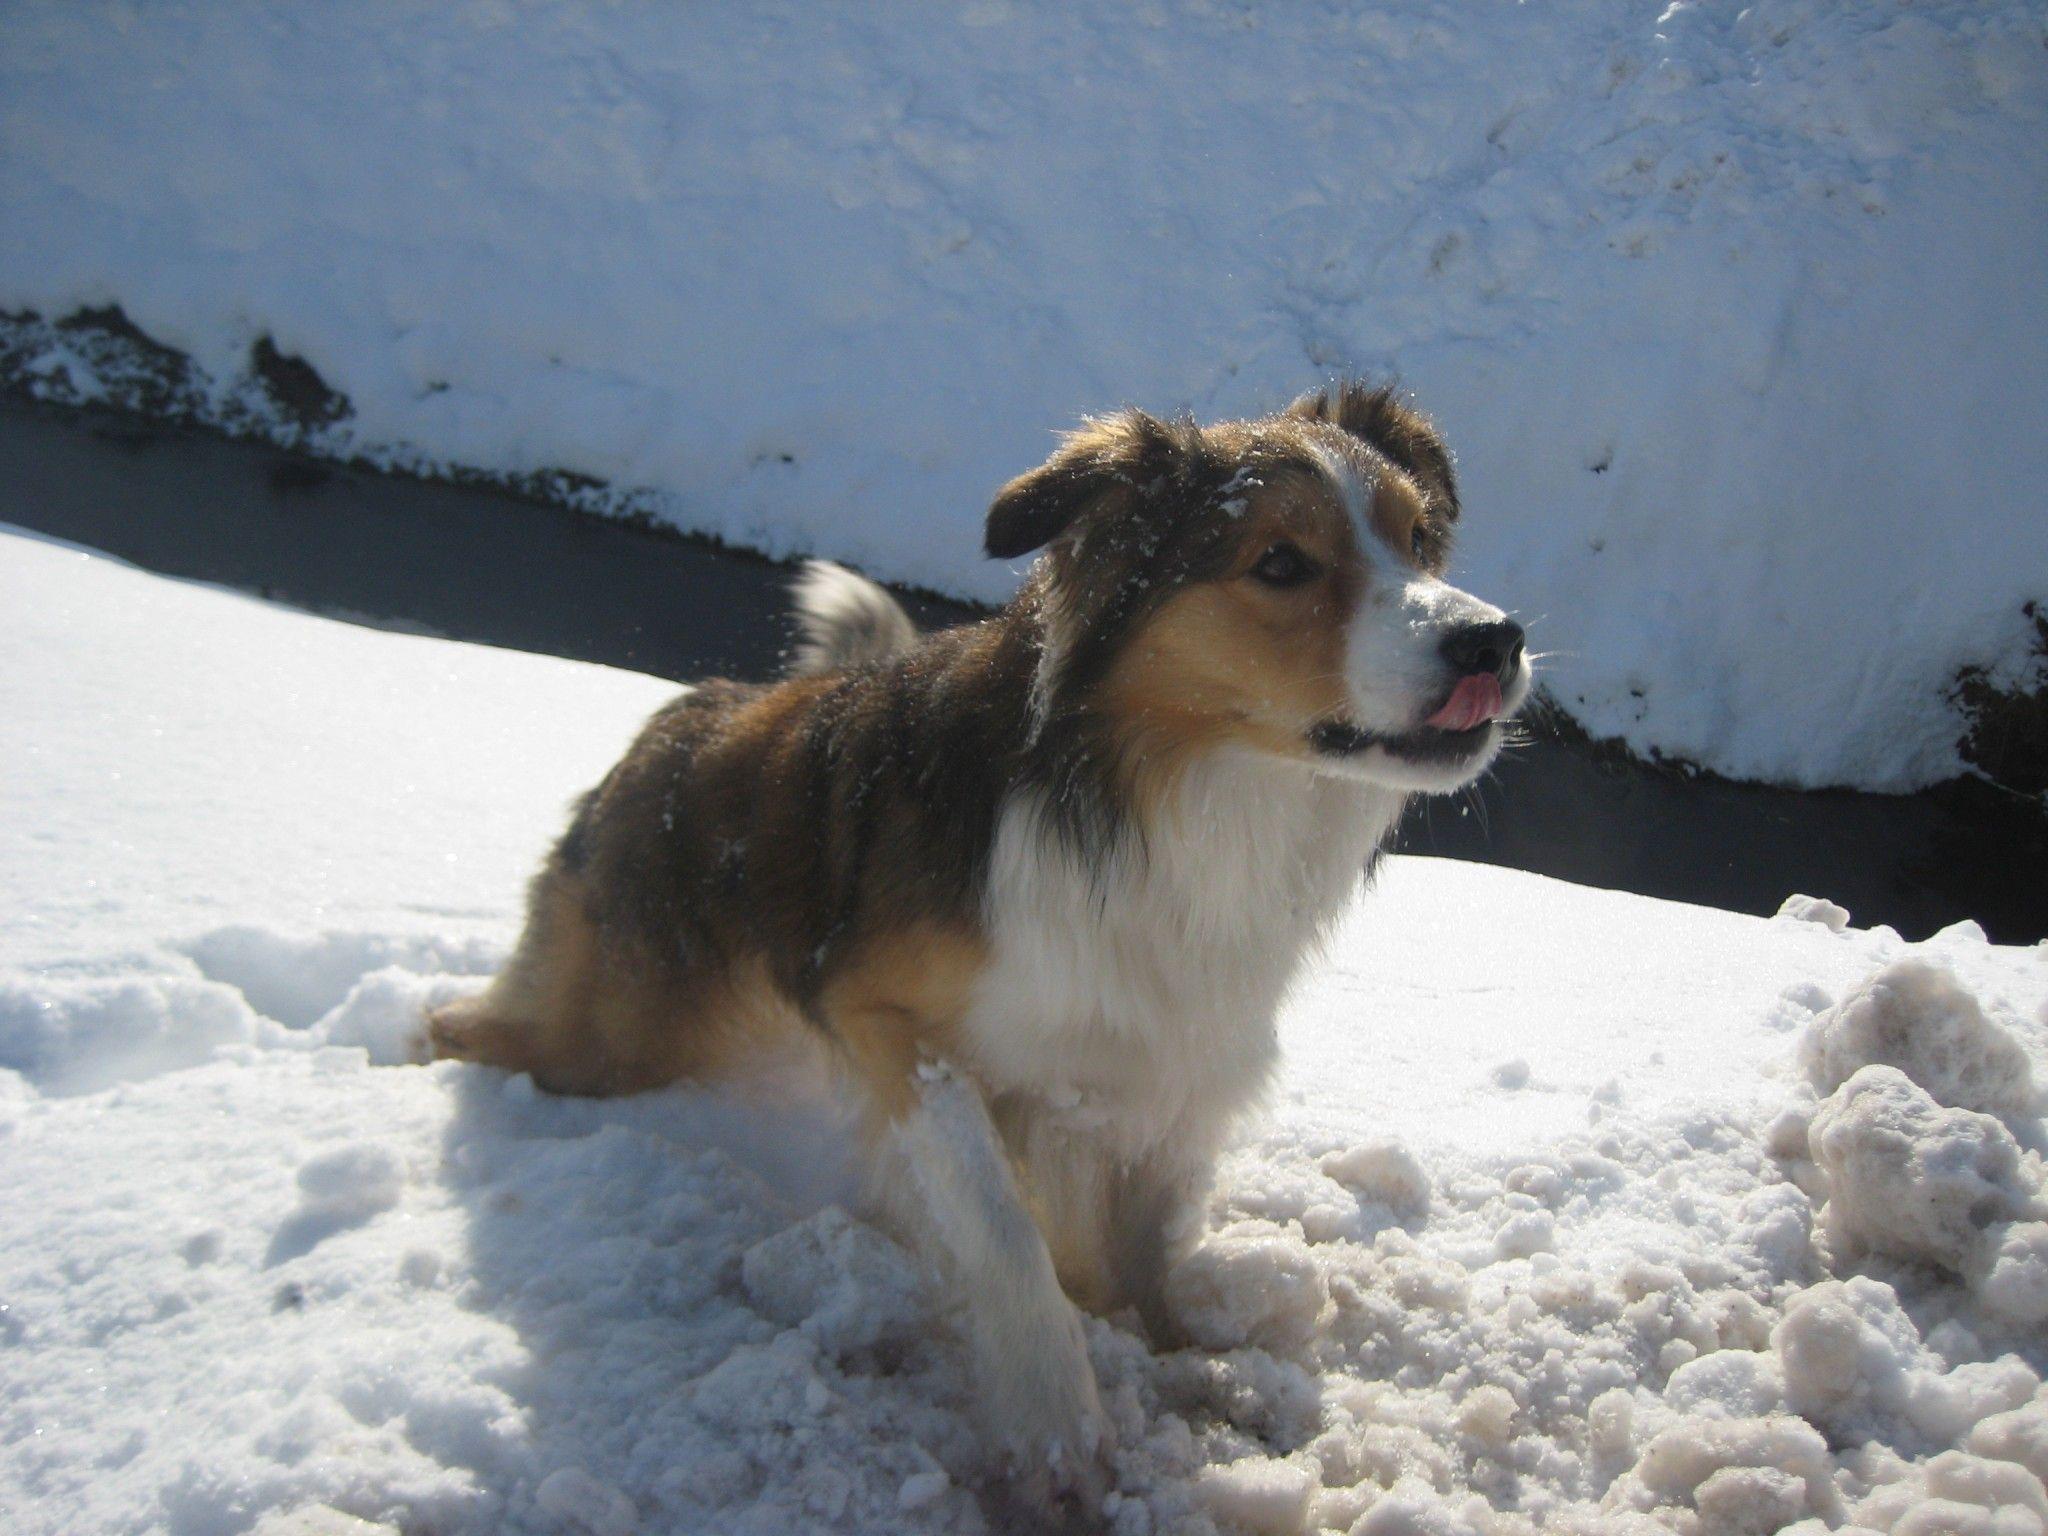 Sichtlich Gefallen am Schnee hat auch Hund Buddy.